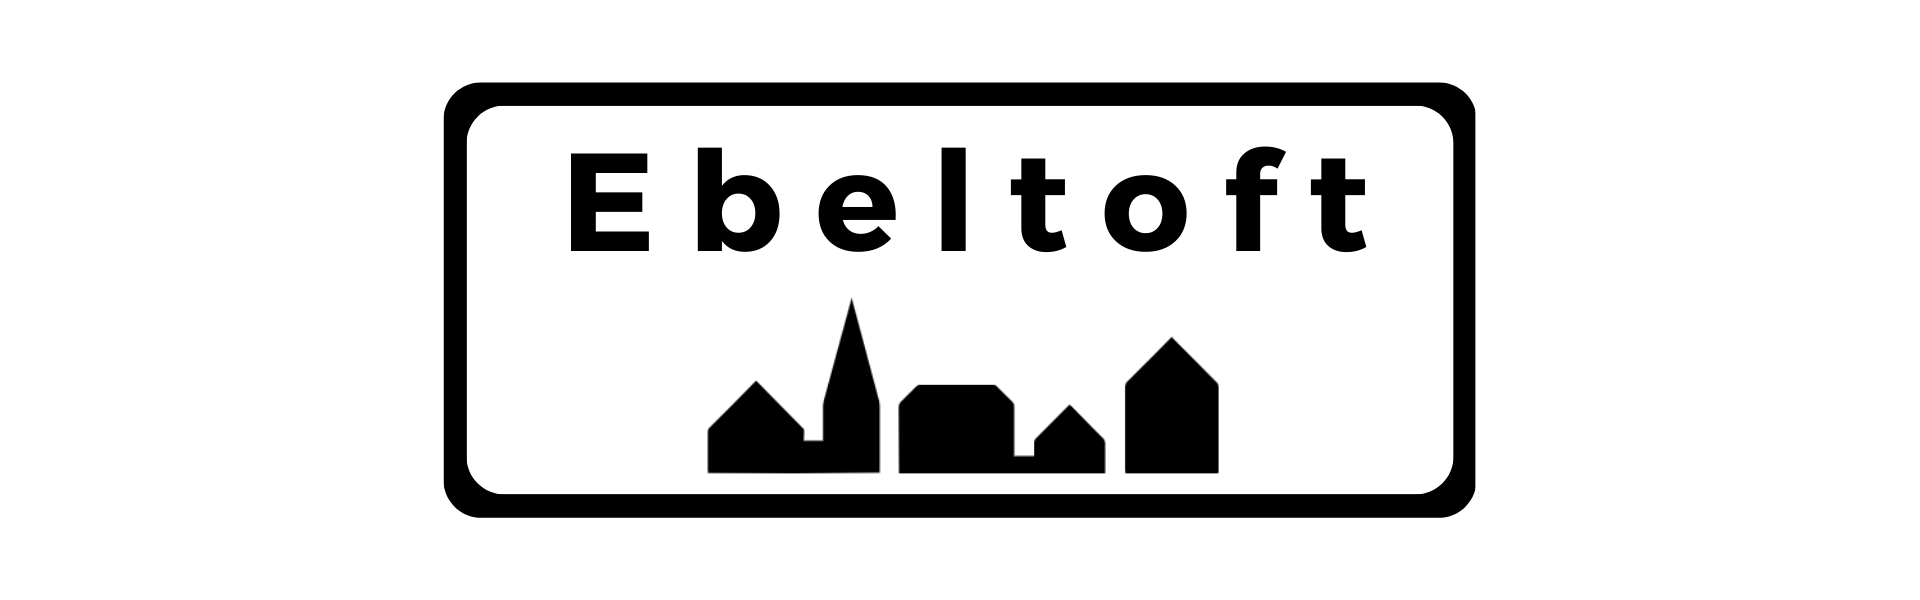 Byskilt Ebeltoft med beskrivelse af byen